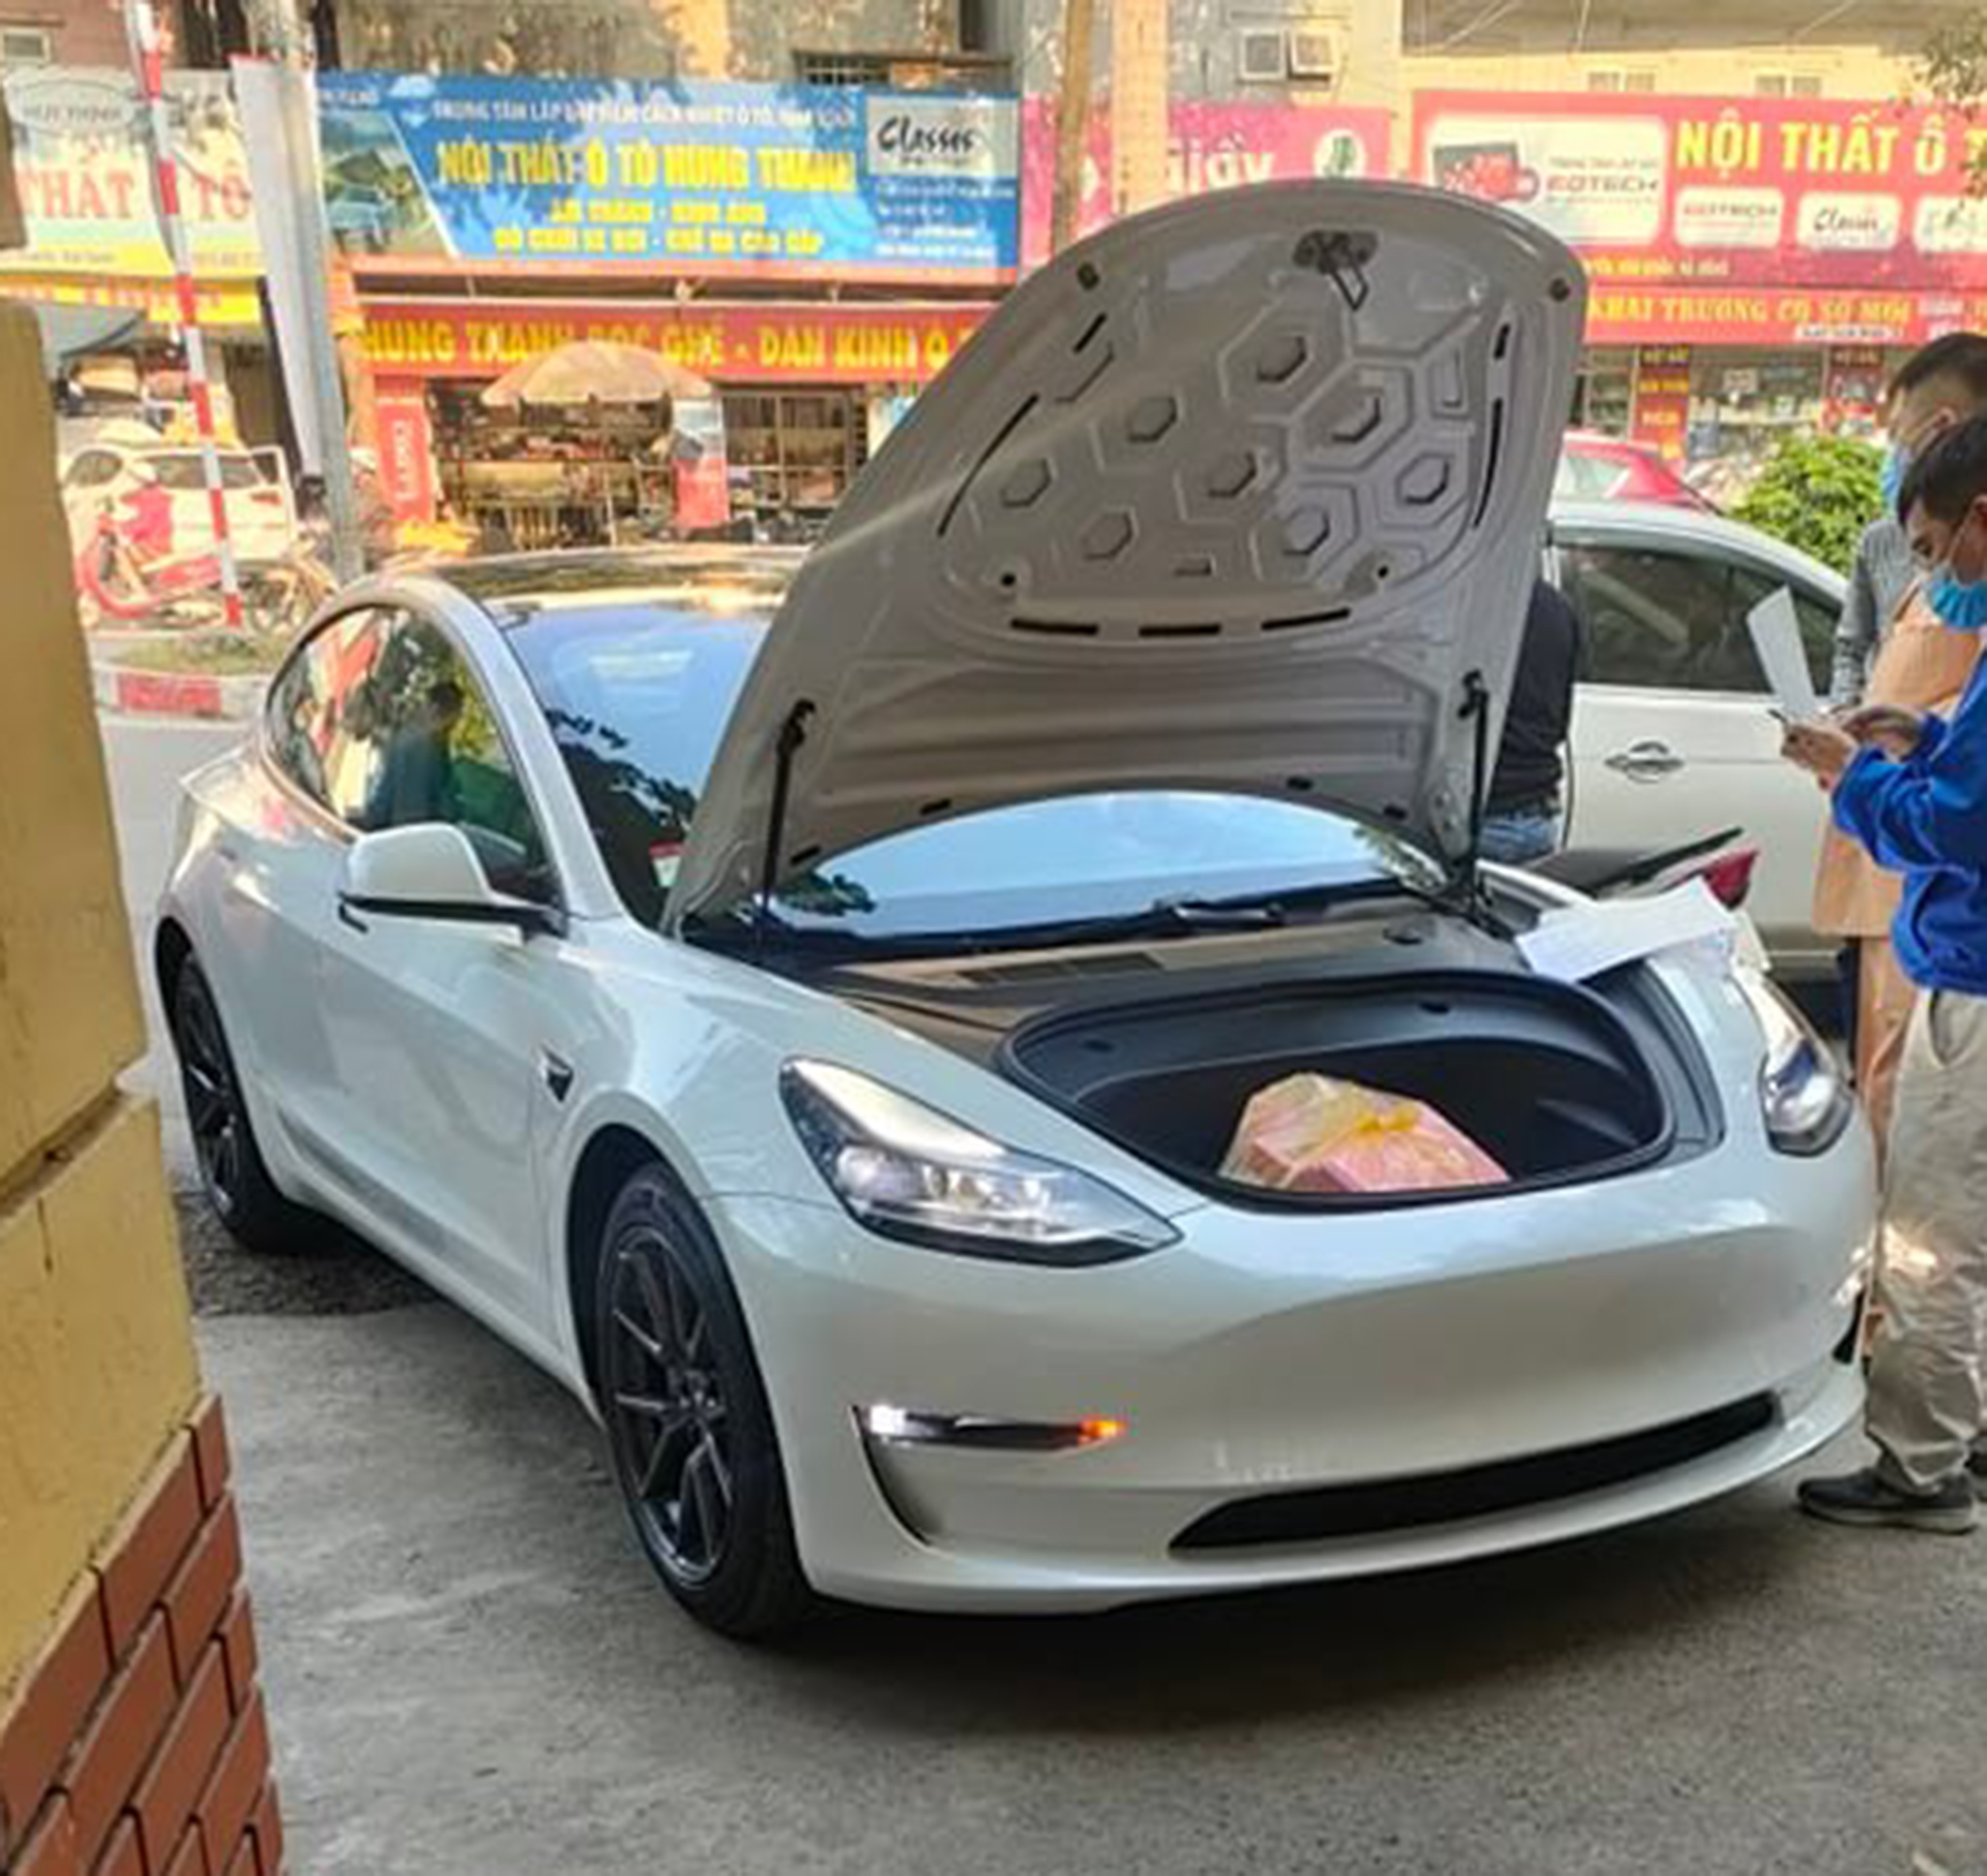 Thêm Tesla Model 3 xuất hiện tại Việt Nam 265519743-4652783934756742-7319138334536515071-n.jpg